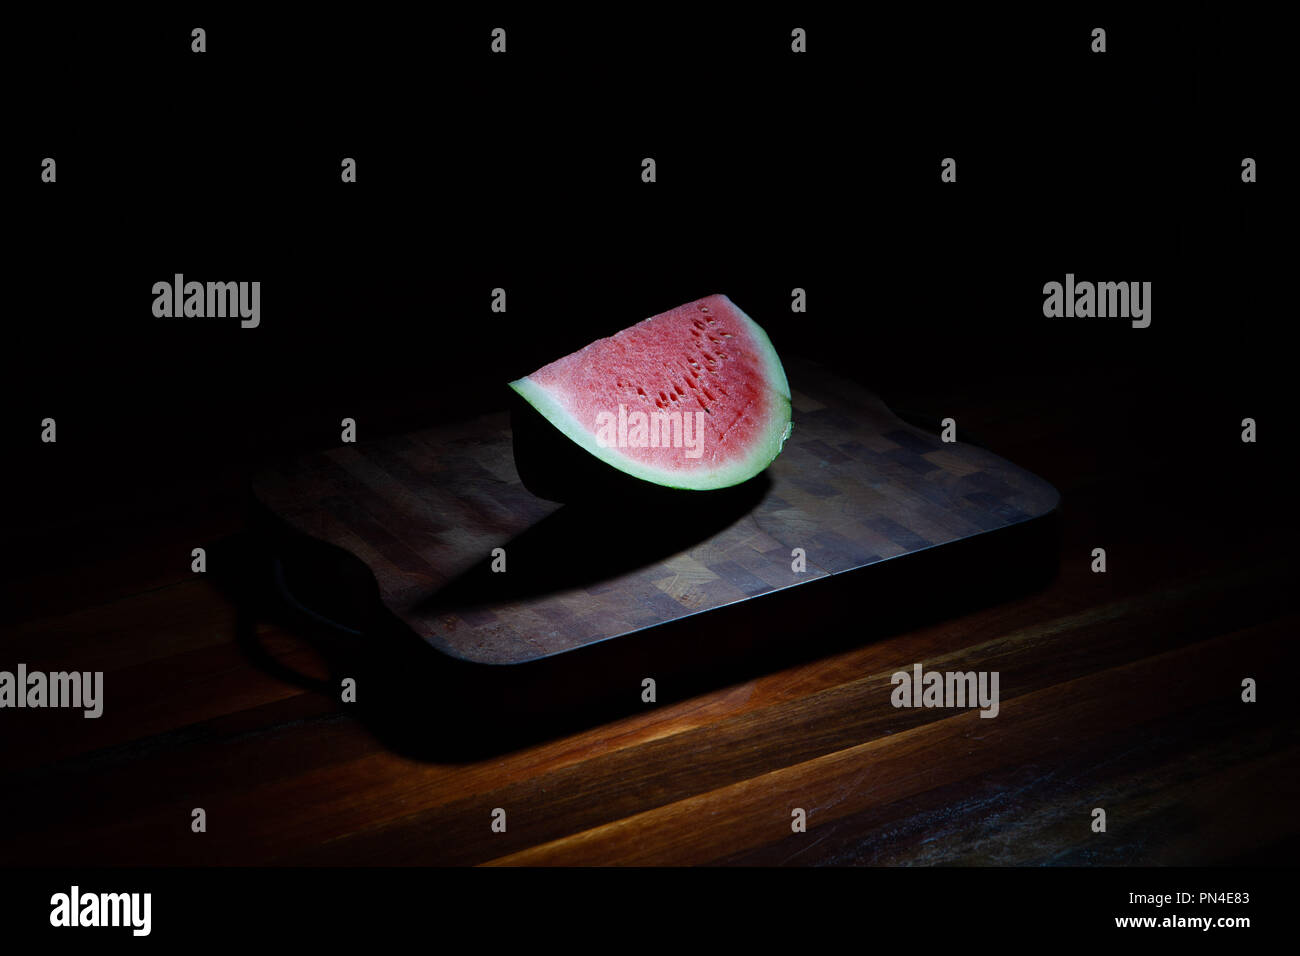 Watermelon slice on chopping board sur fond noir avec lumière Banque D'Images